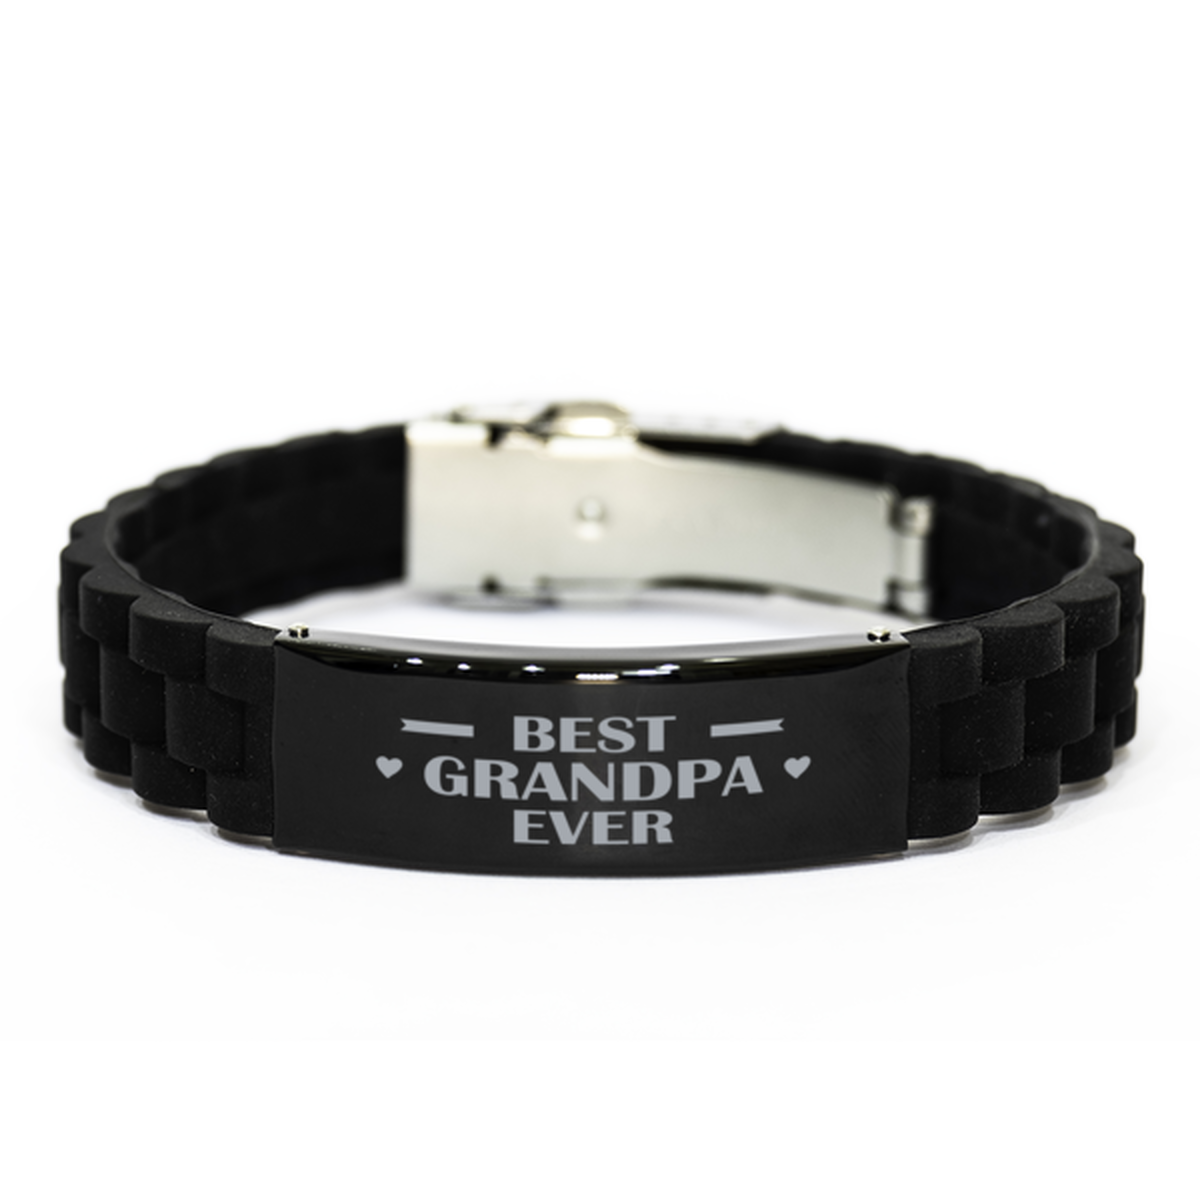 Best Grandpa Ever Grandpa Gifts, Funny Black Engraved Bracelet For Grandpa, Family Gifts For Men